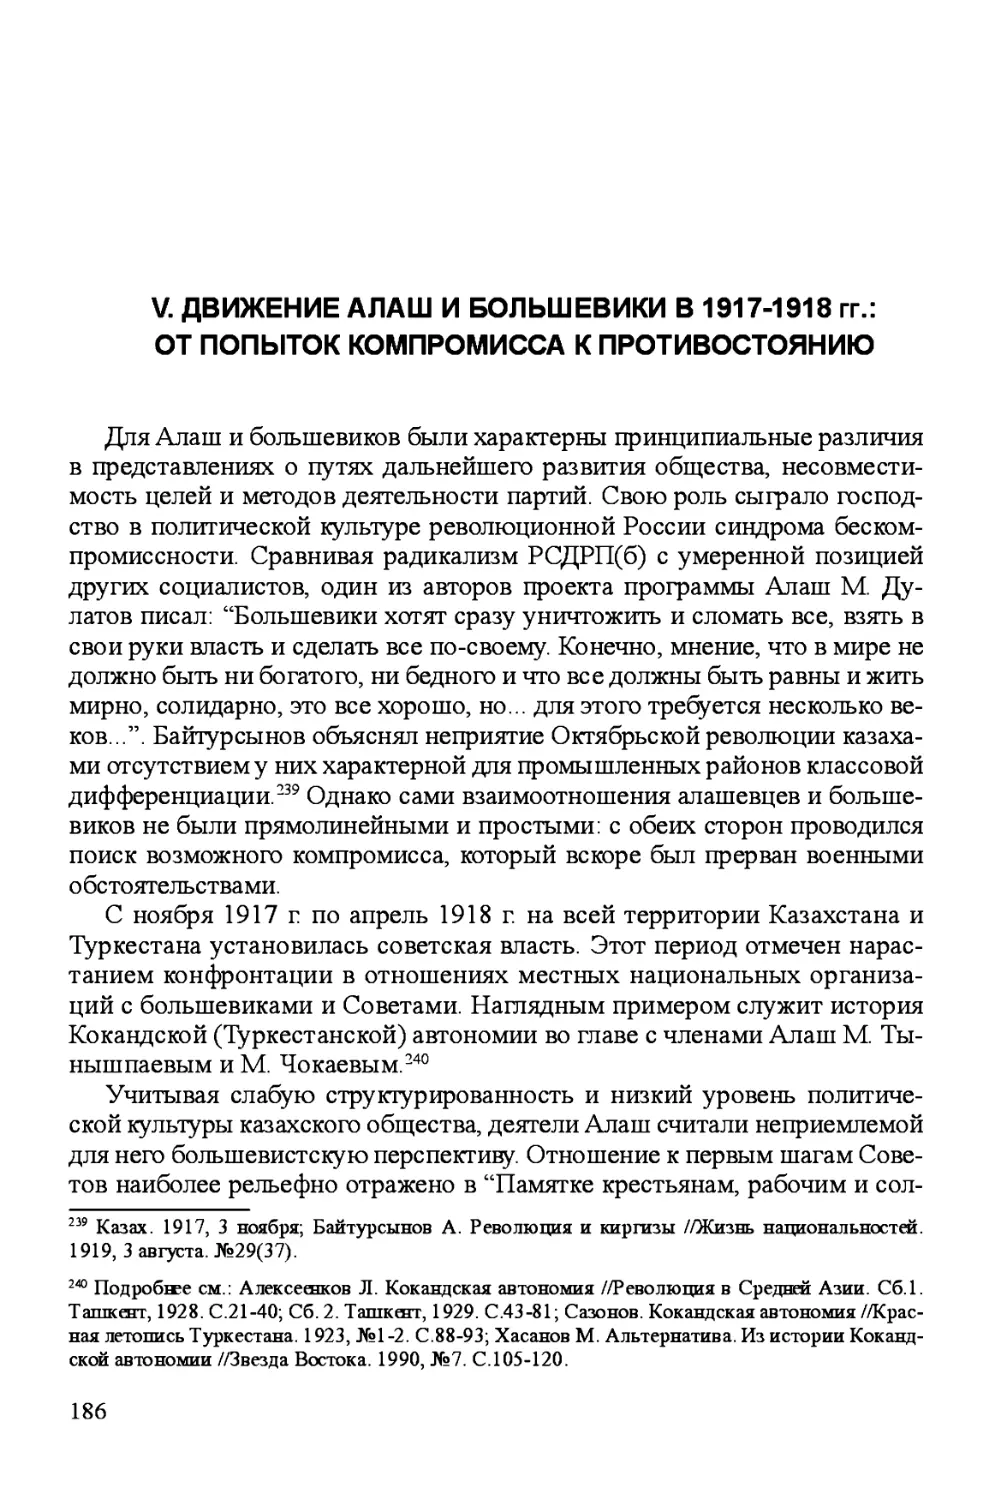 V. Движение Алаш и большевики в 1917-1918 гг.: От попыток компромисса к противостоянию